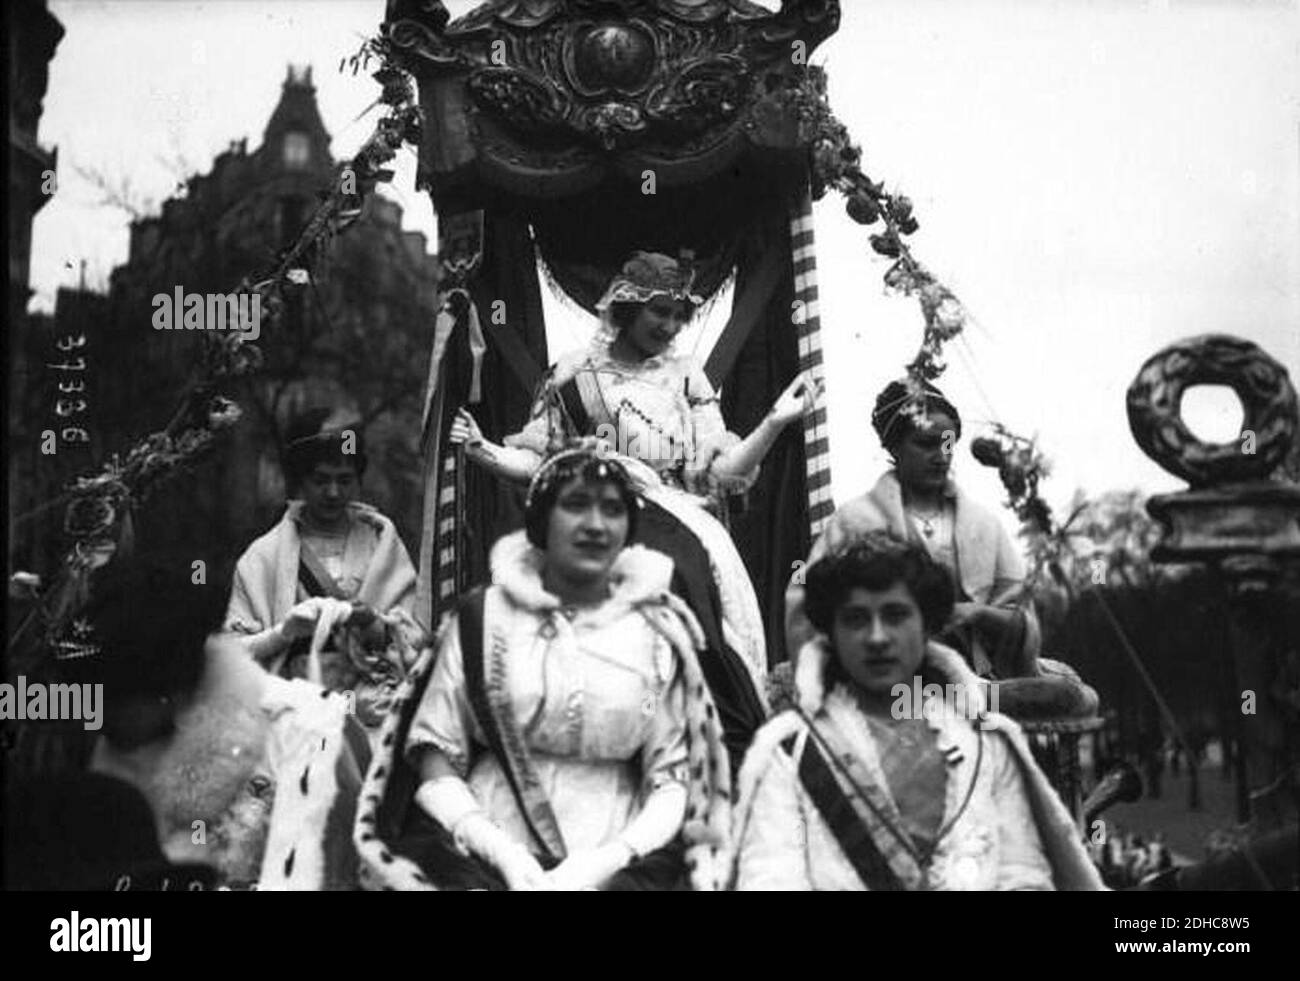 La reine des reine et d'autres reines sur leur char en 1914. Stockfoto